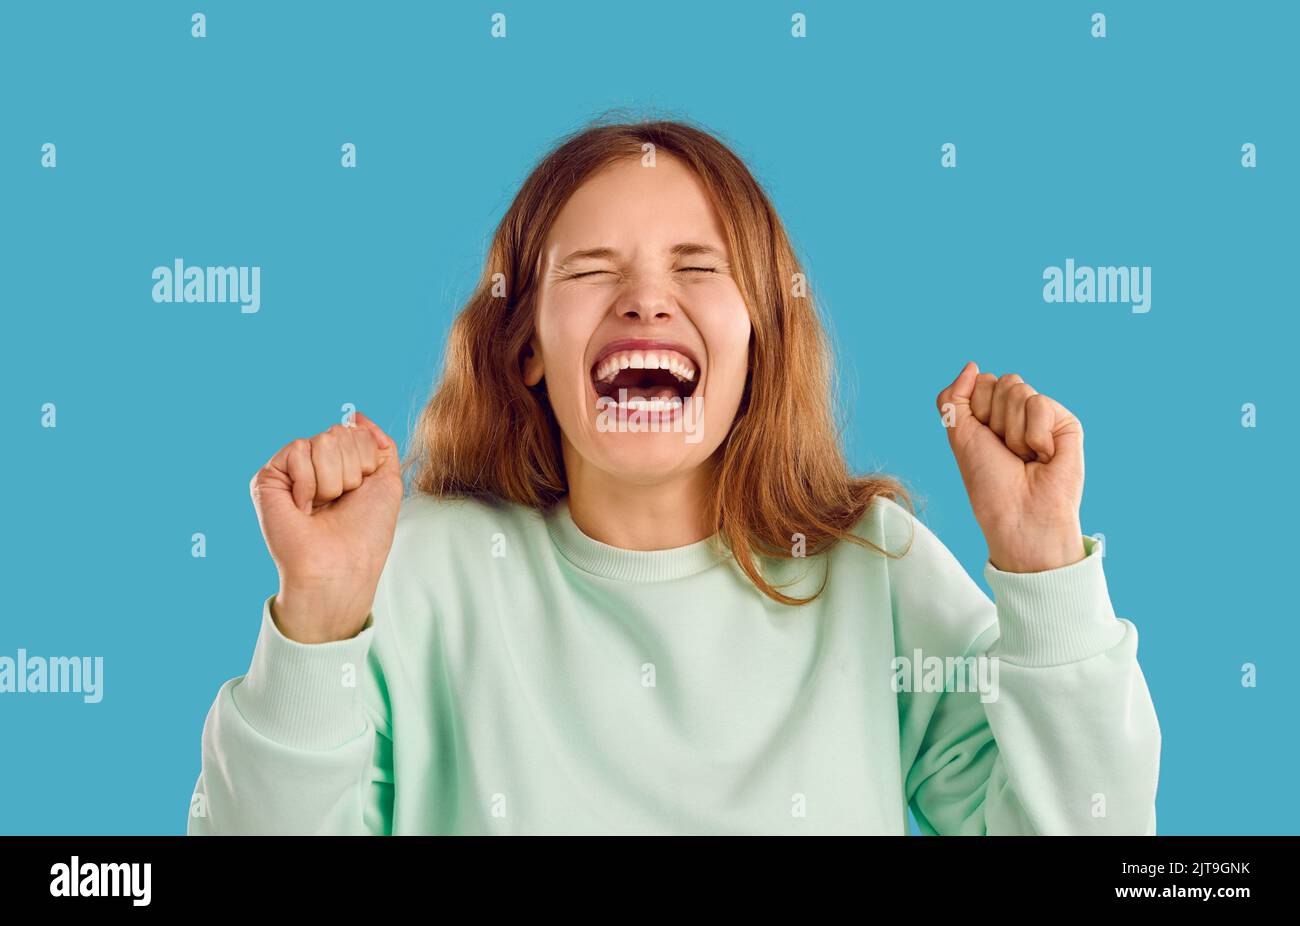 Retrato de mujer joven o adolescente divertida riendo o gritando con la boca abierta Foto de stock